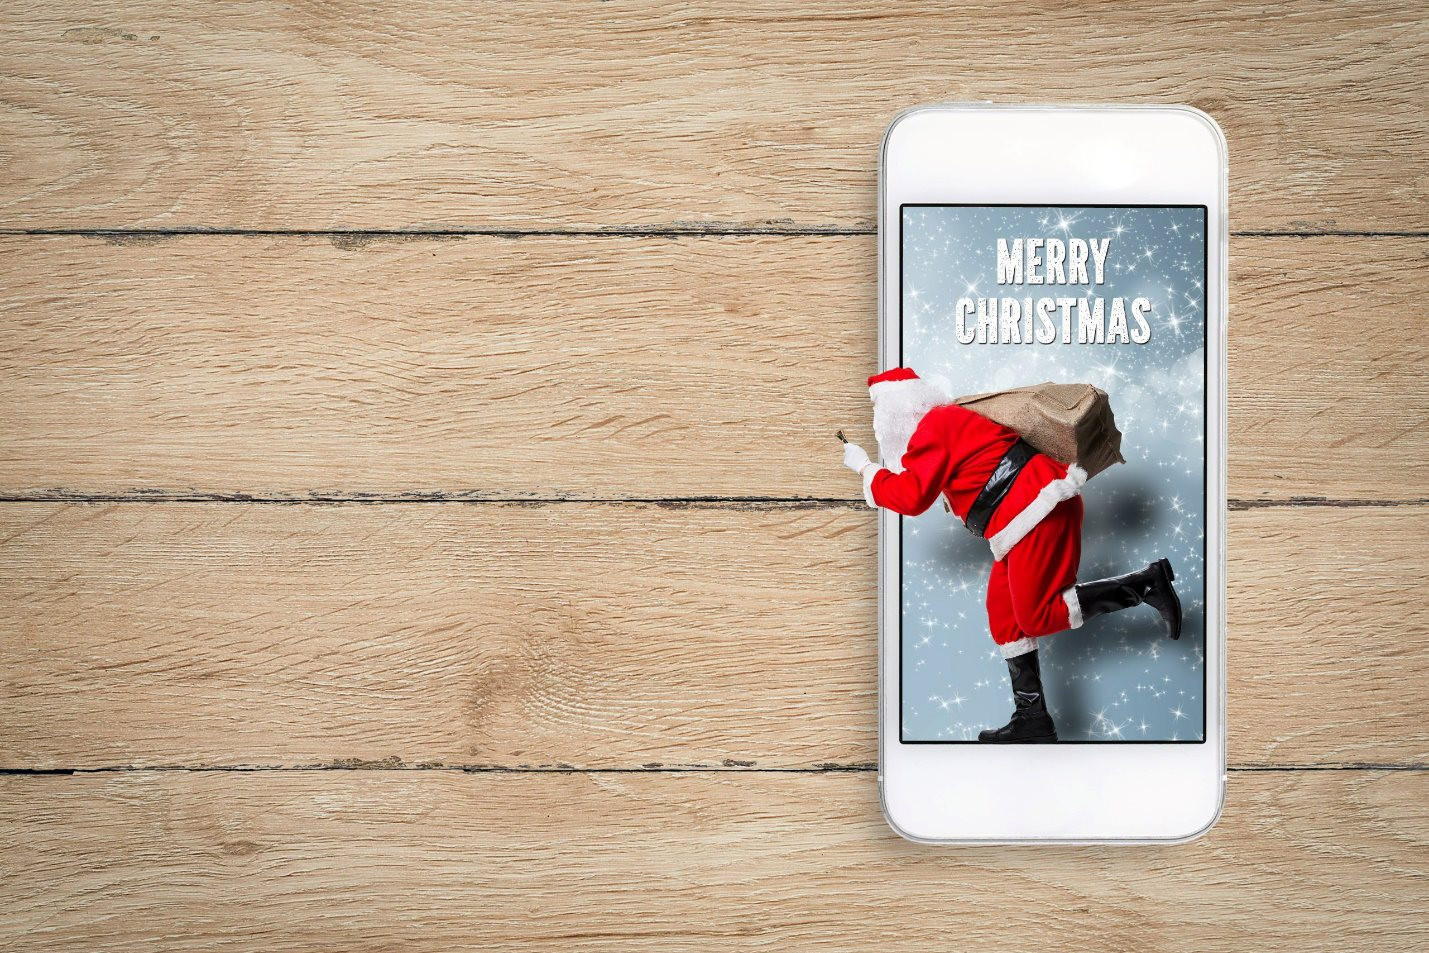 Không khí Giáng sinh đang tràn ngập khắp nơi, và bạn có thể mang nó vào chiếc điện thoại của mình với những ảnh nền Giáng sinh đầy tính giải trí. Cùng với iPhone và Android, cảm nhận và thưởng thức mùa lễ hội này tới tận nhà bạn. Hãy cập nhật ngay để có được những trải nghiệm tuyệt vời.